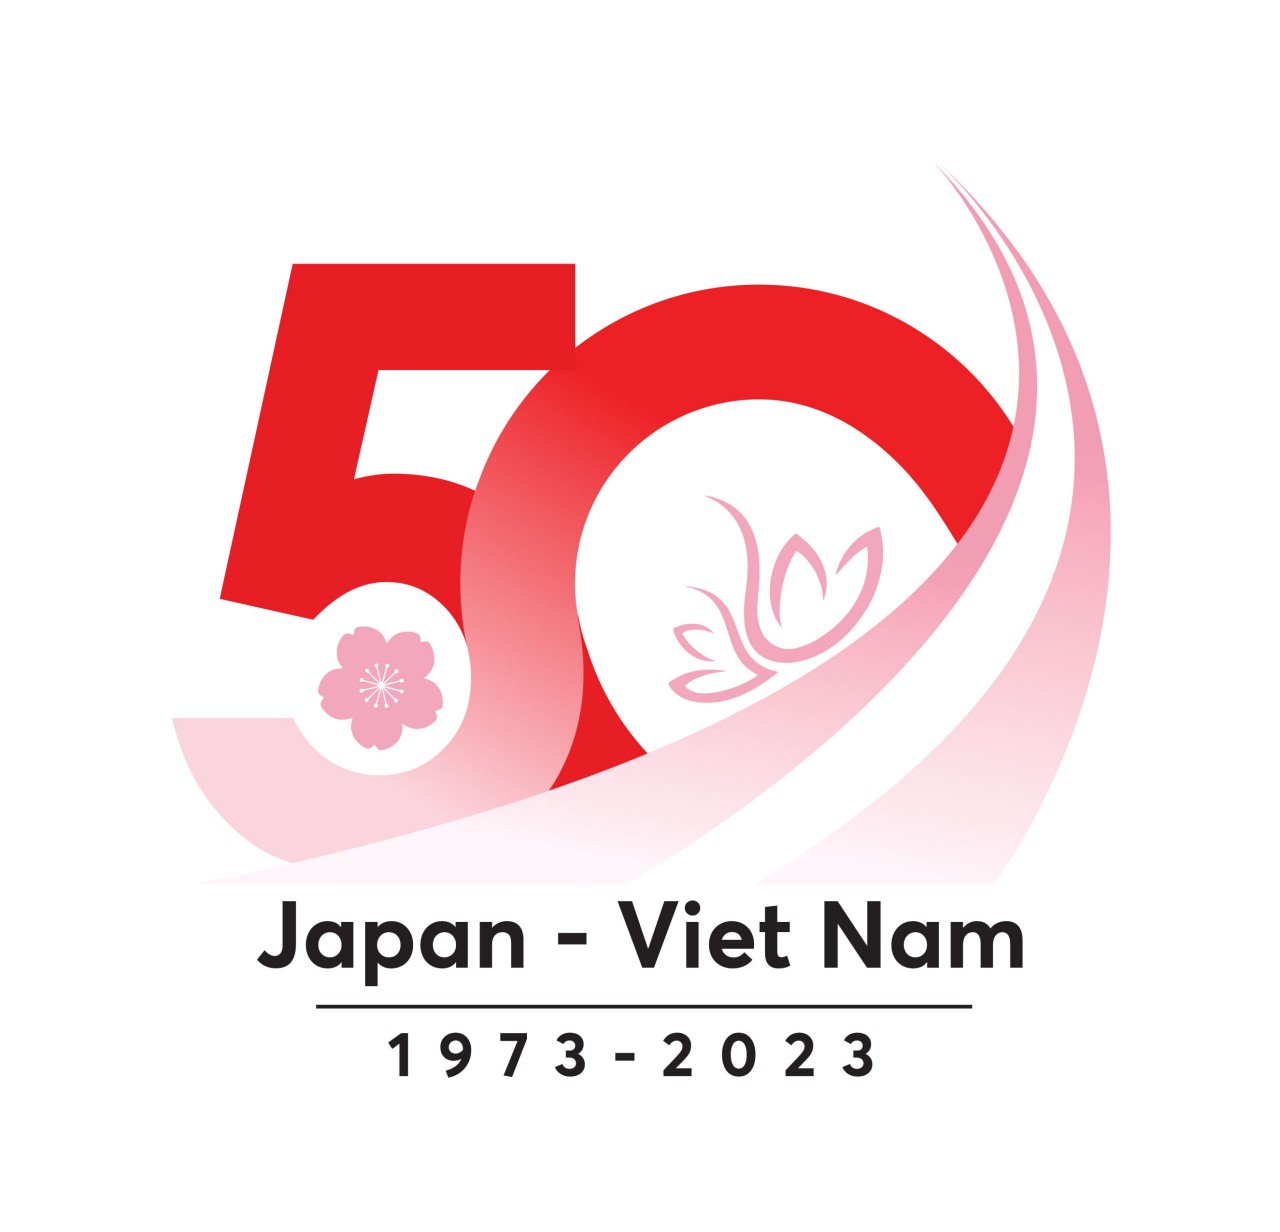 50 năm hữu nghị Việt - Nhật: Sen - Đào hợp sắc